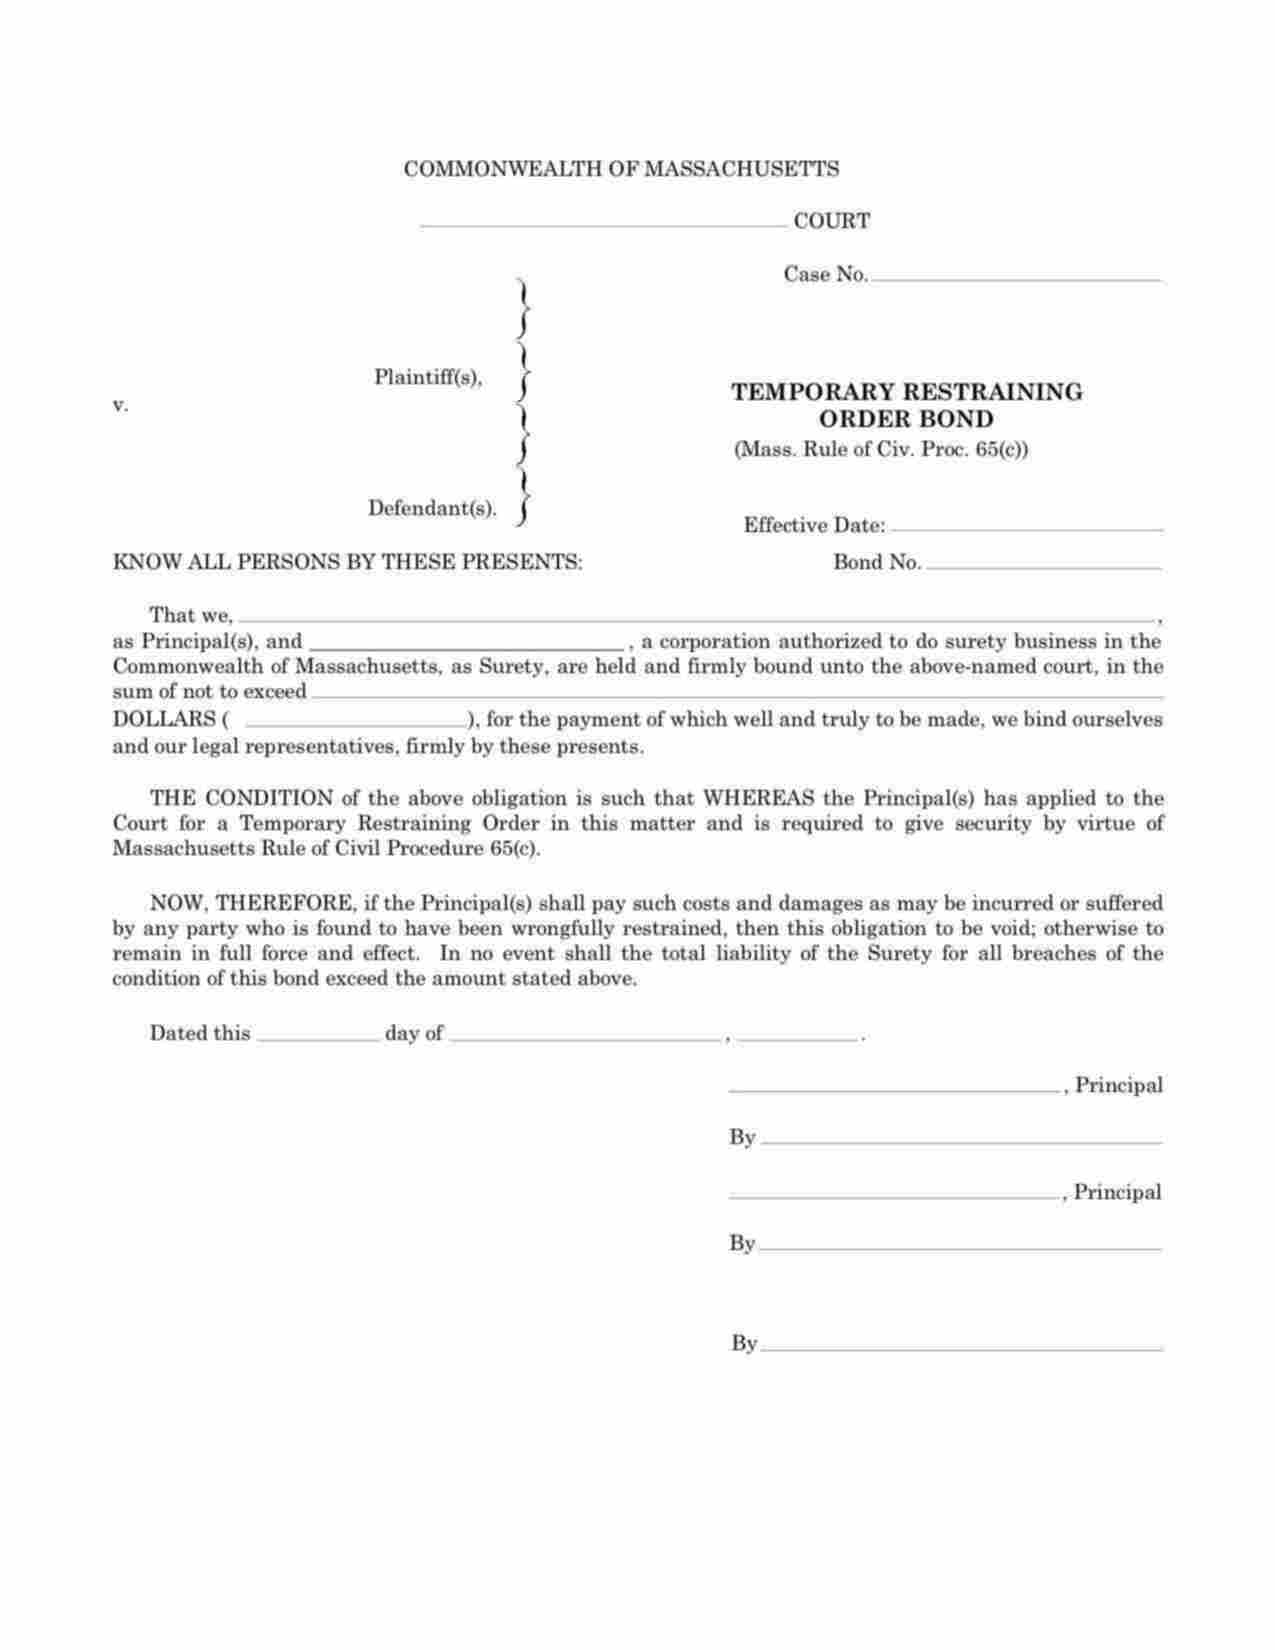 Massachusetts Temporary Restraining Order Bond Form